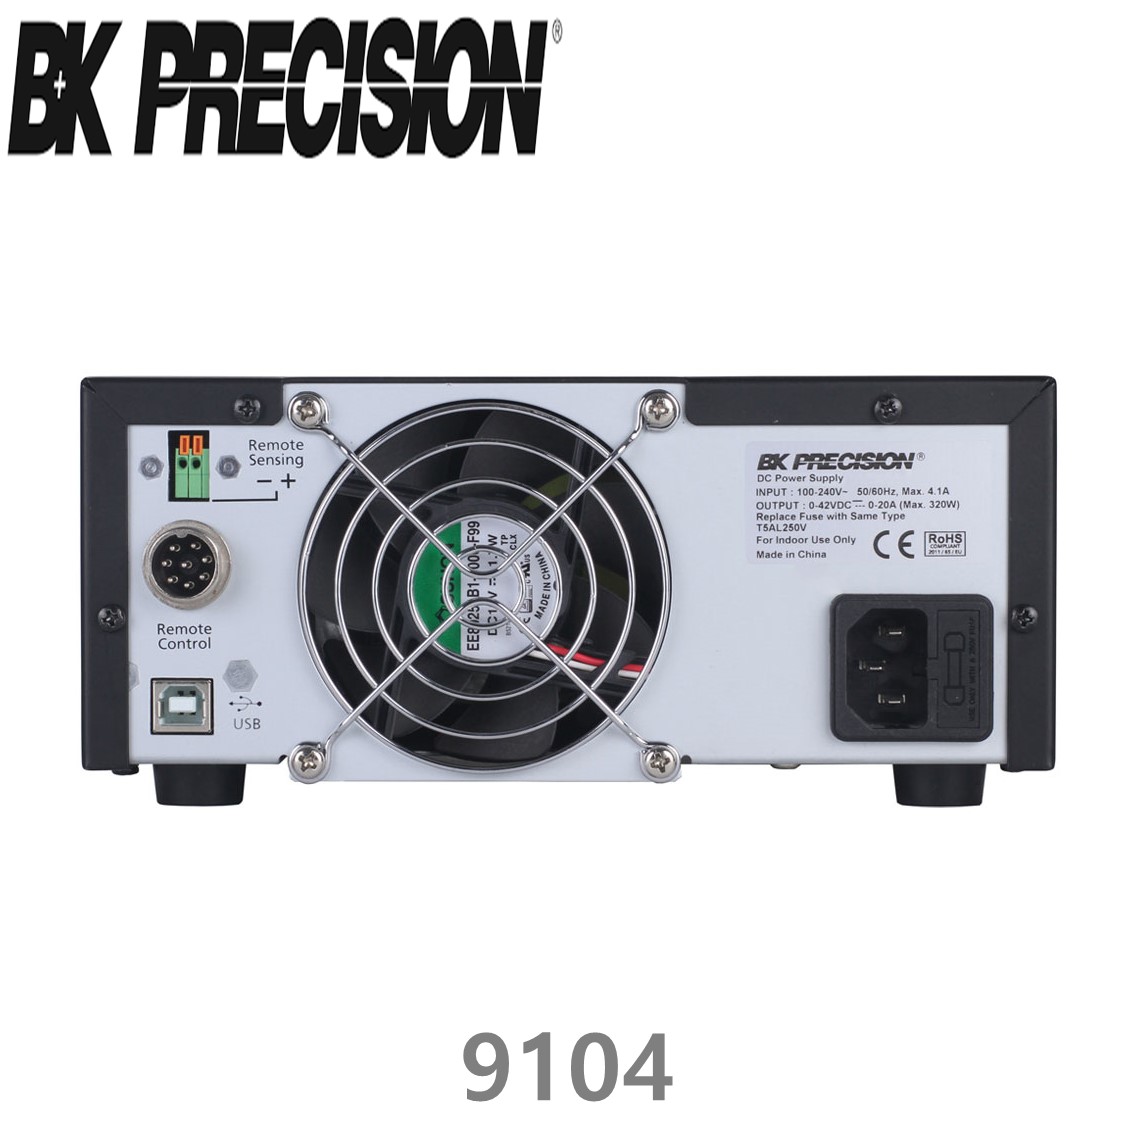 [ BK PRECISION ] BK 9104, 84V/10A(320W), DC 전원공급기, DC전원공급장치, B&K 9104